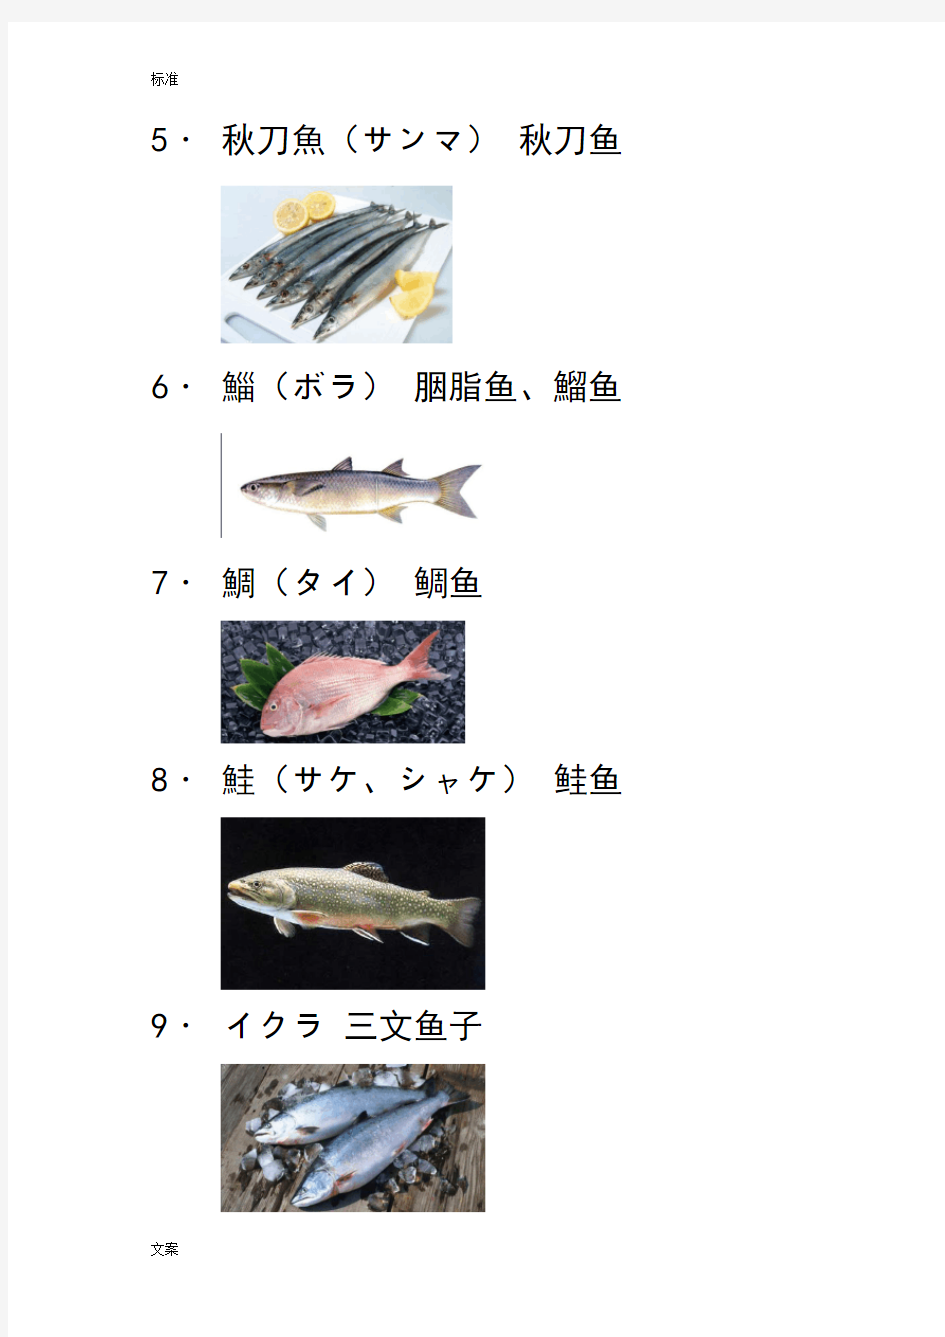 各种鱼贝日语名字(图文)